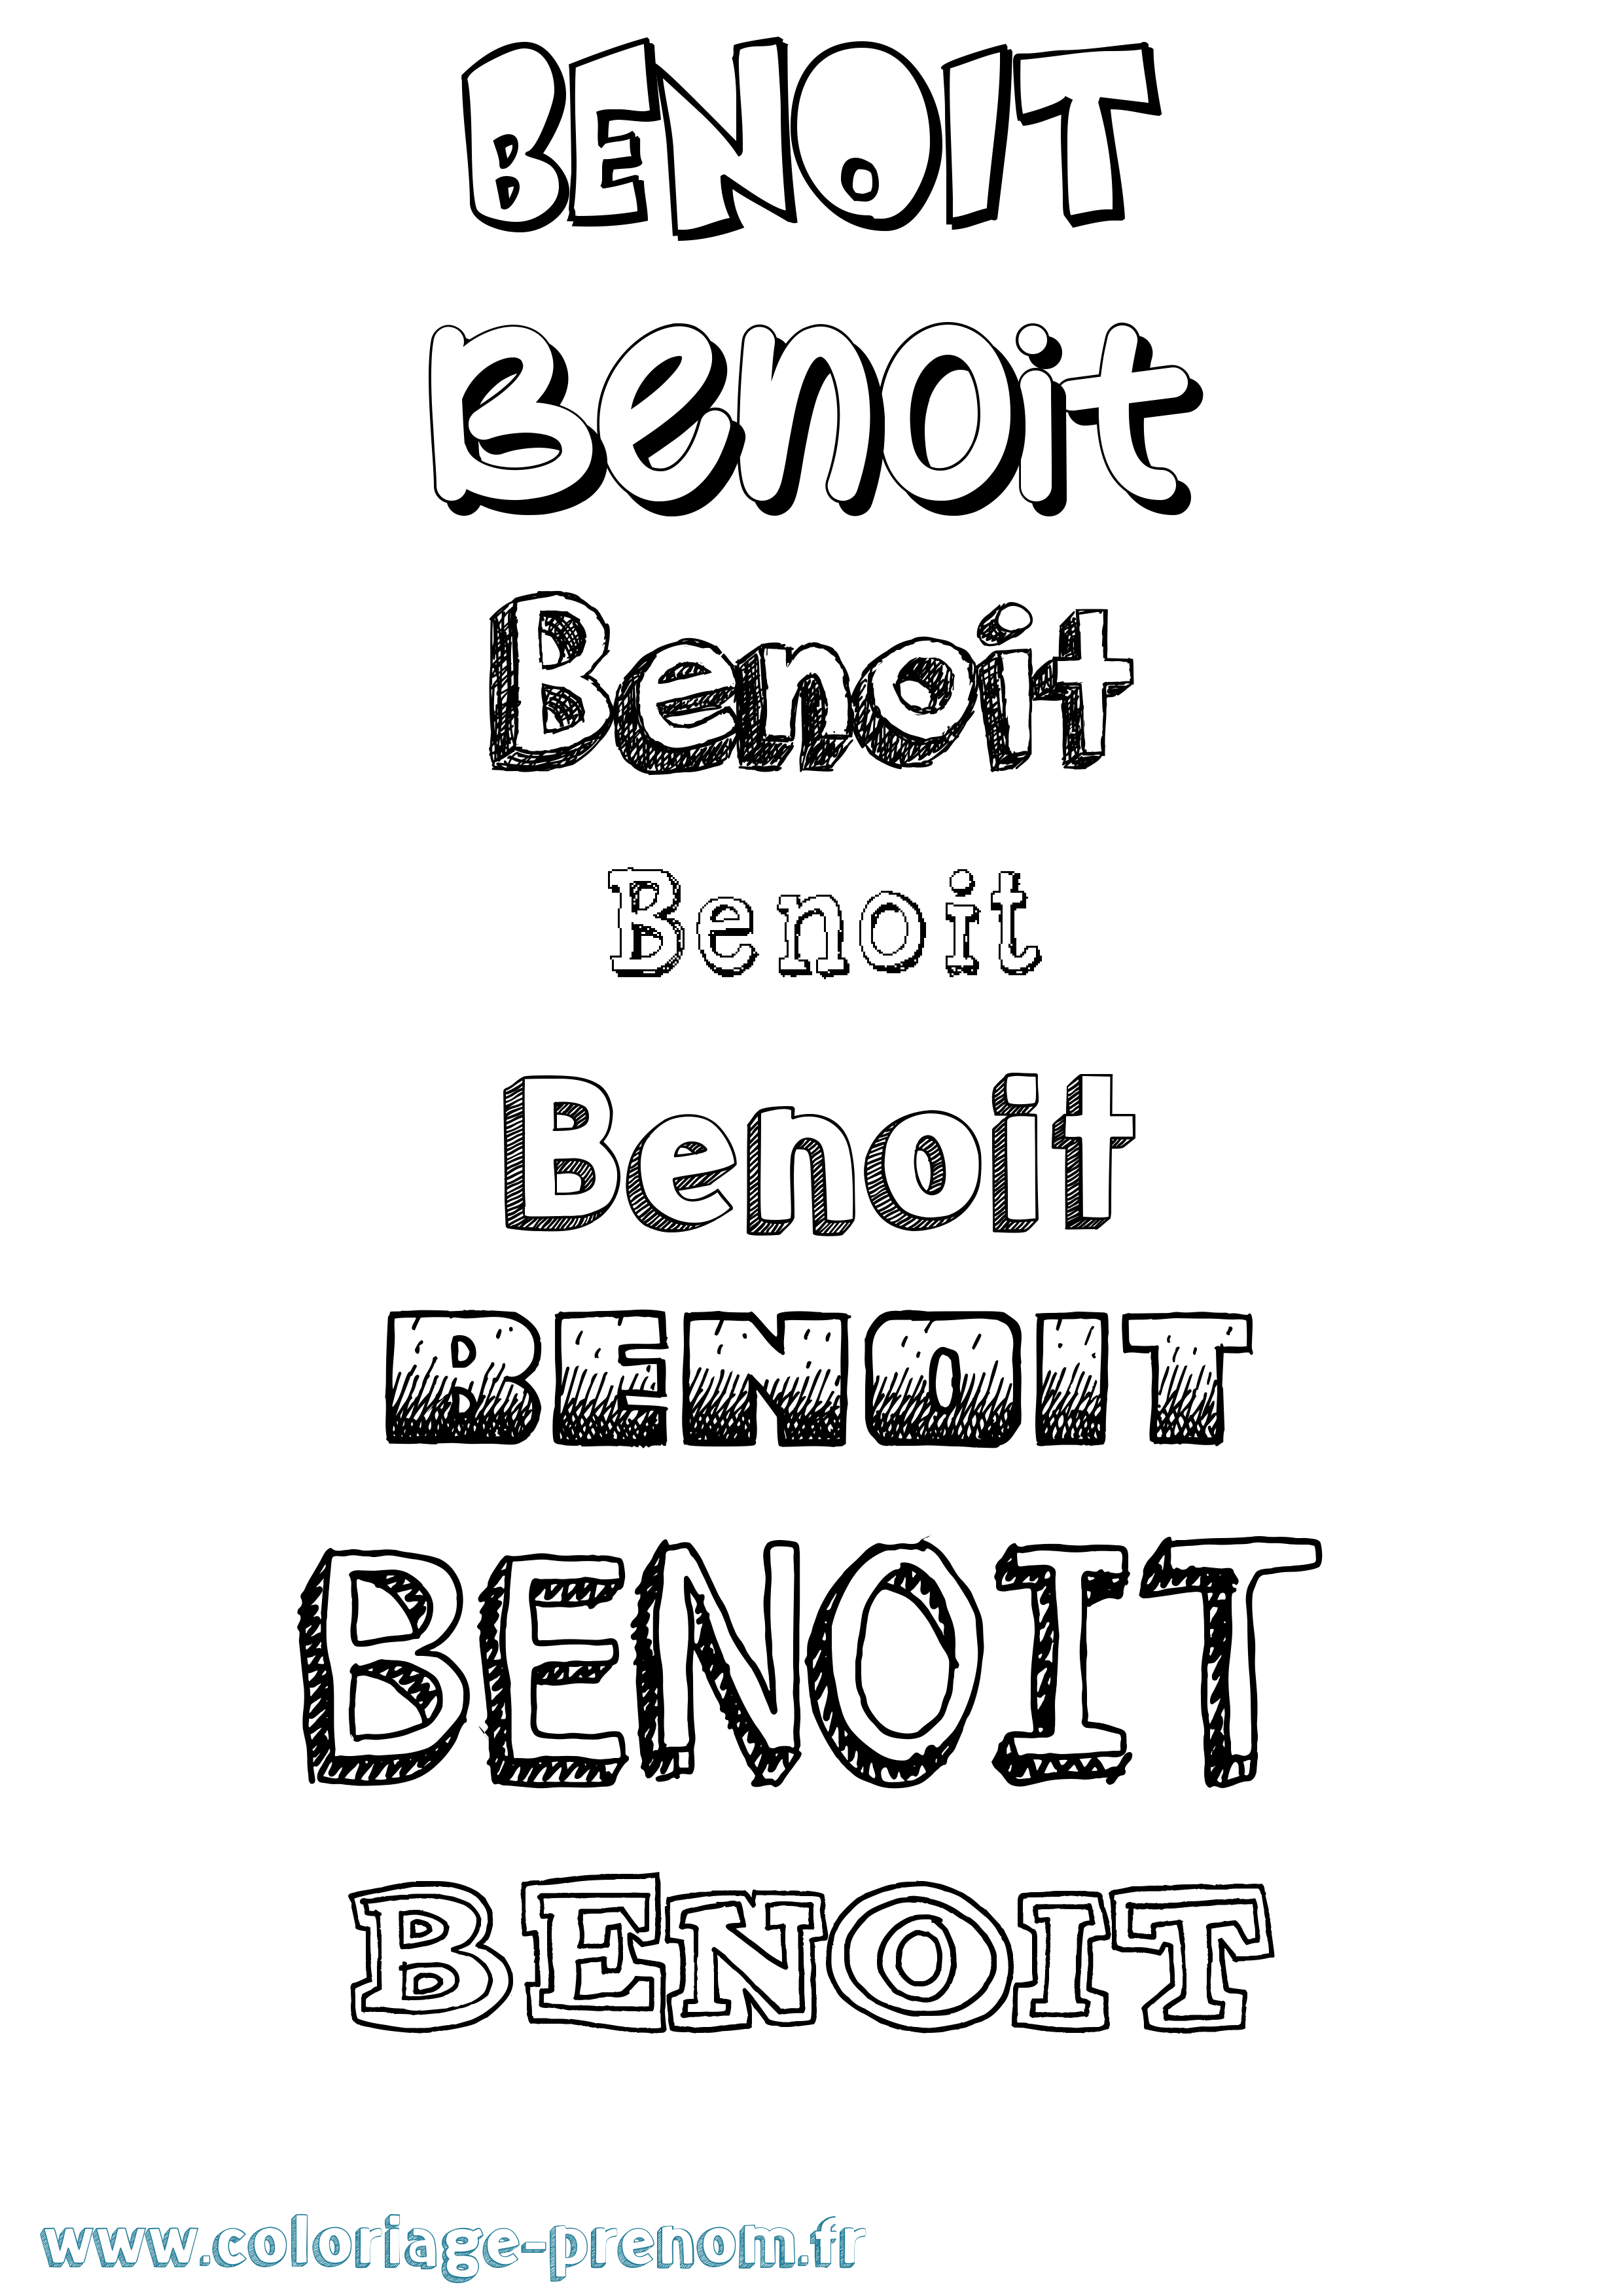 Coloriage prénom Benoit